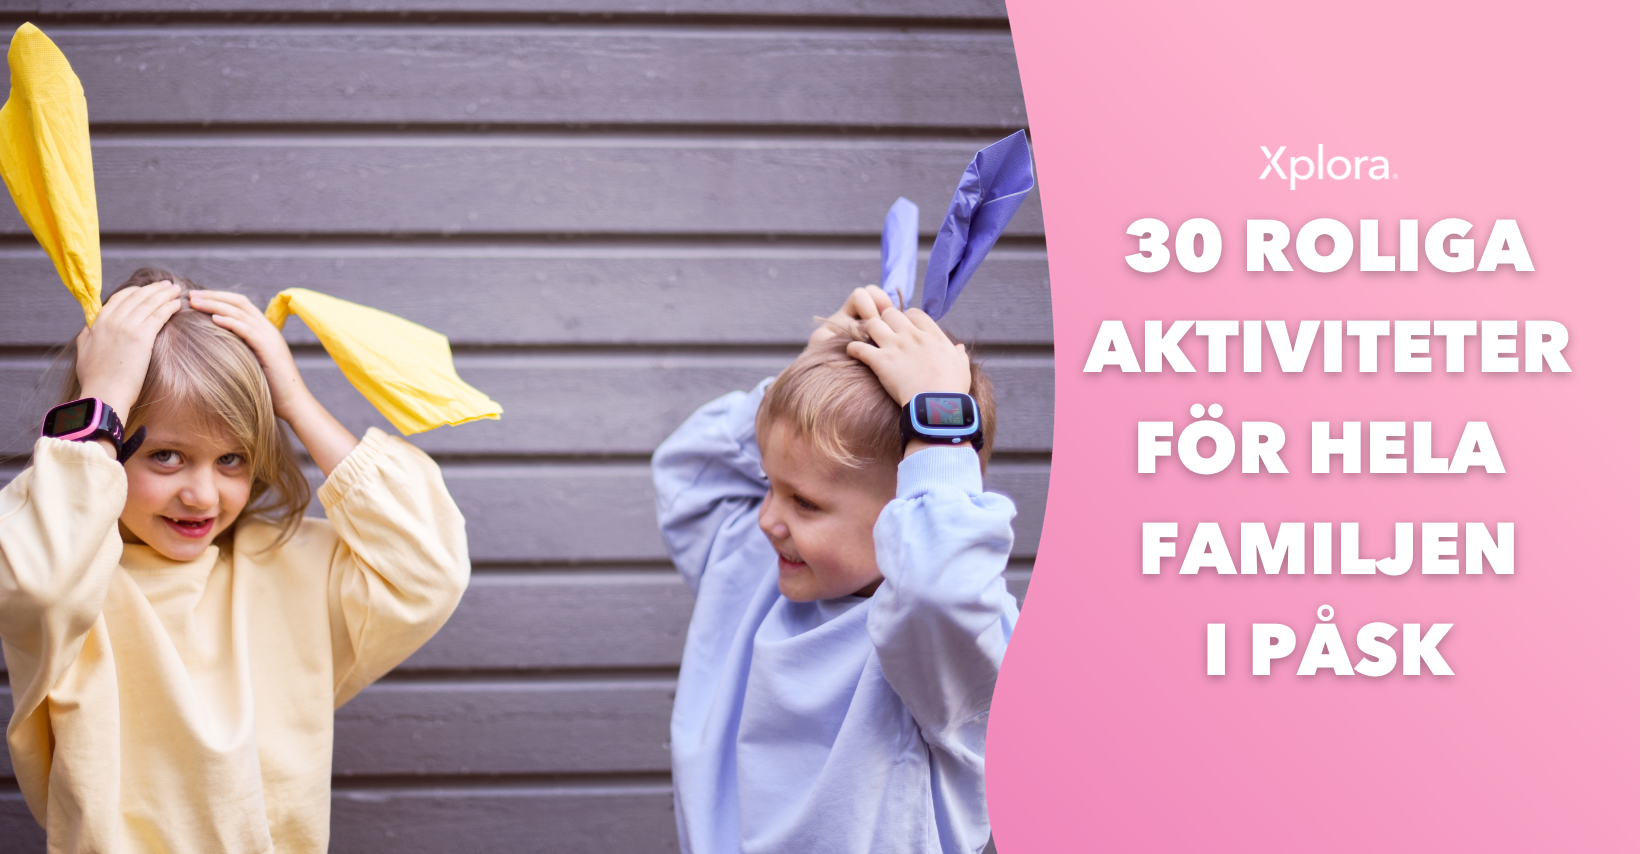 30 roliga påskaktiviteter för hela familjen